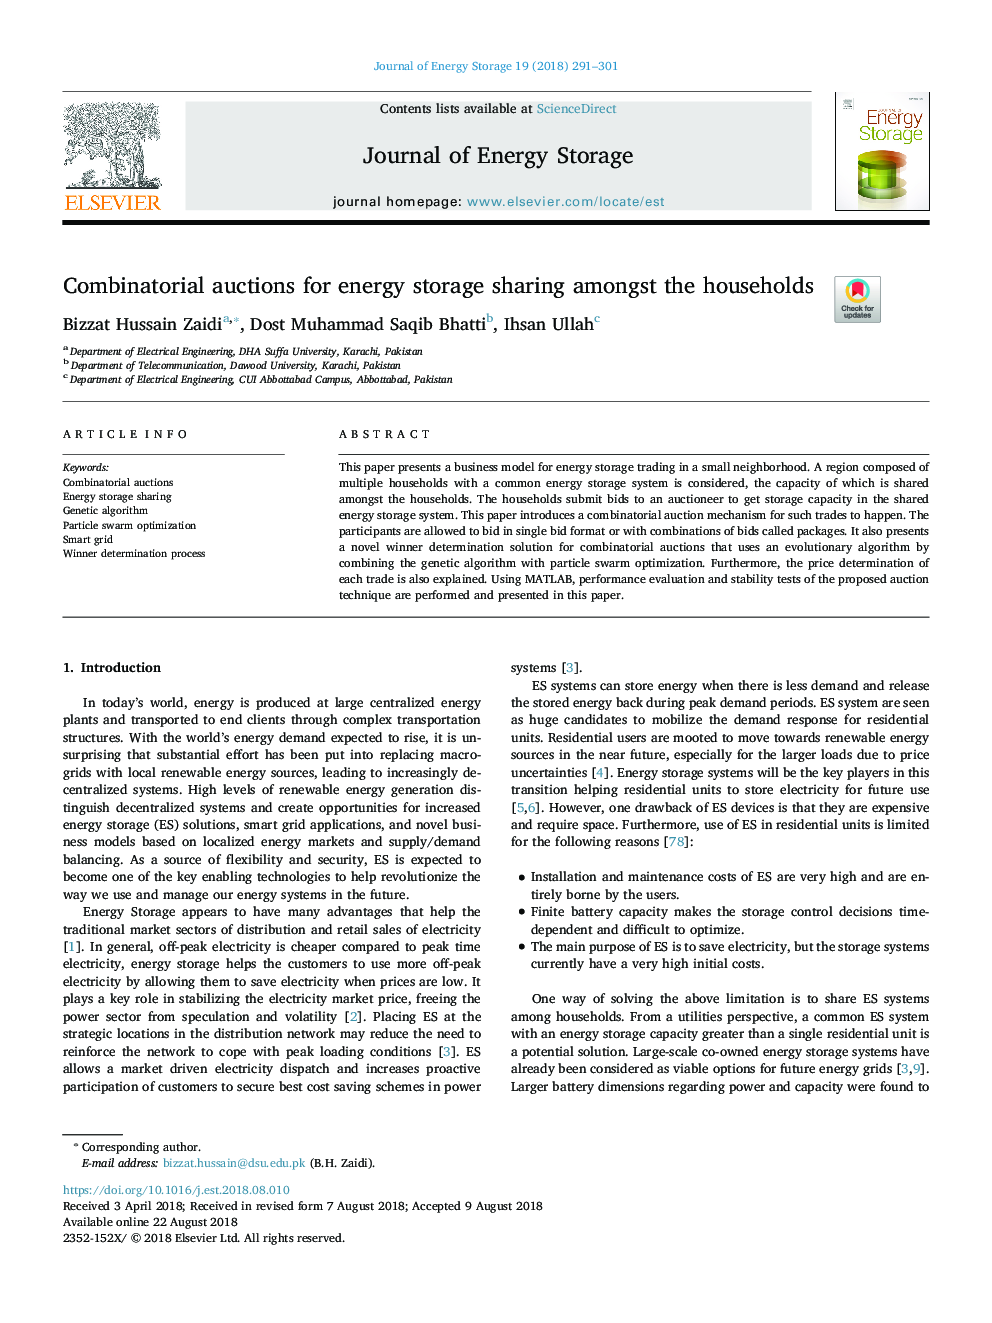 مزایده های ترکیبی برای ذخیره سازی ذخیره انرژی در میان خانوارها